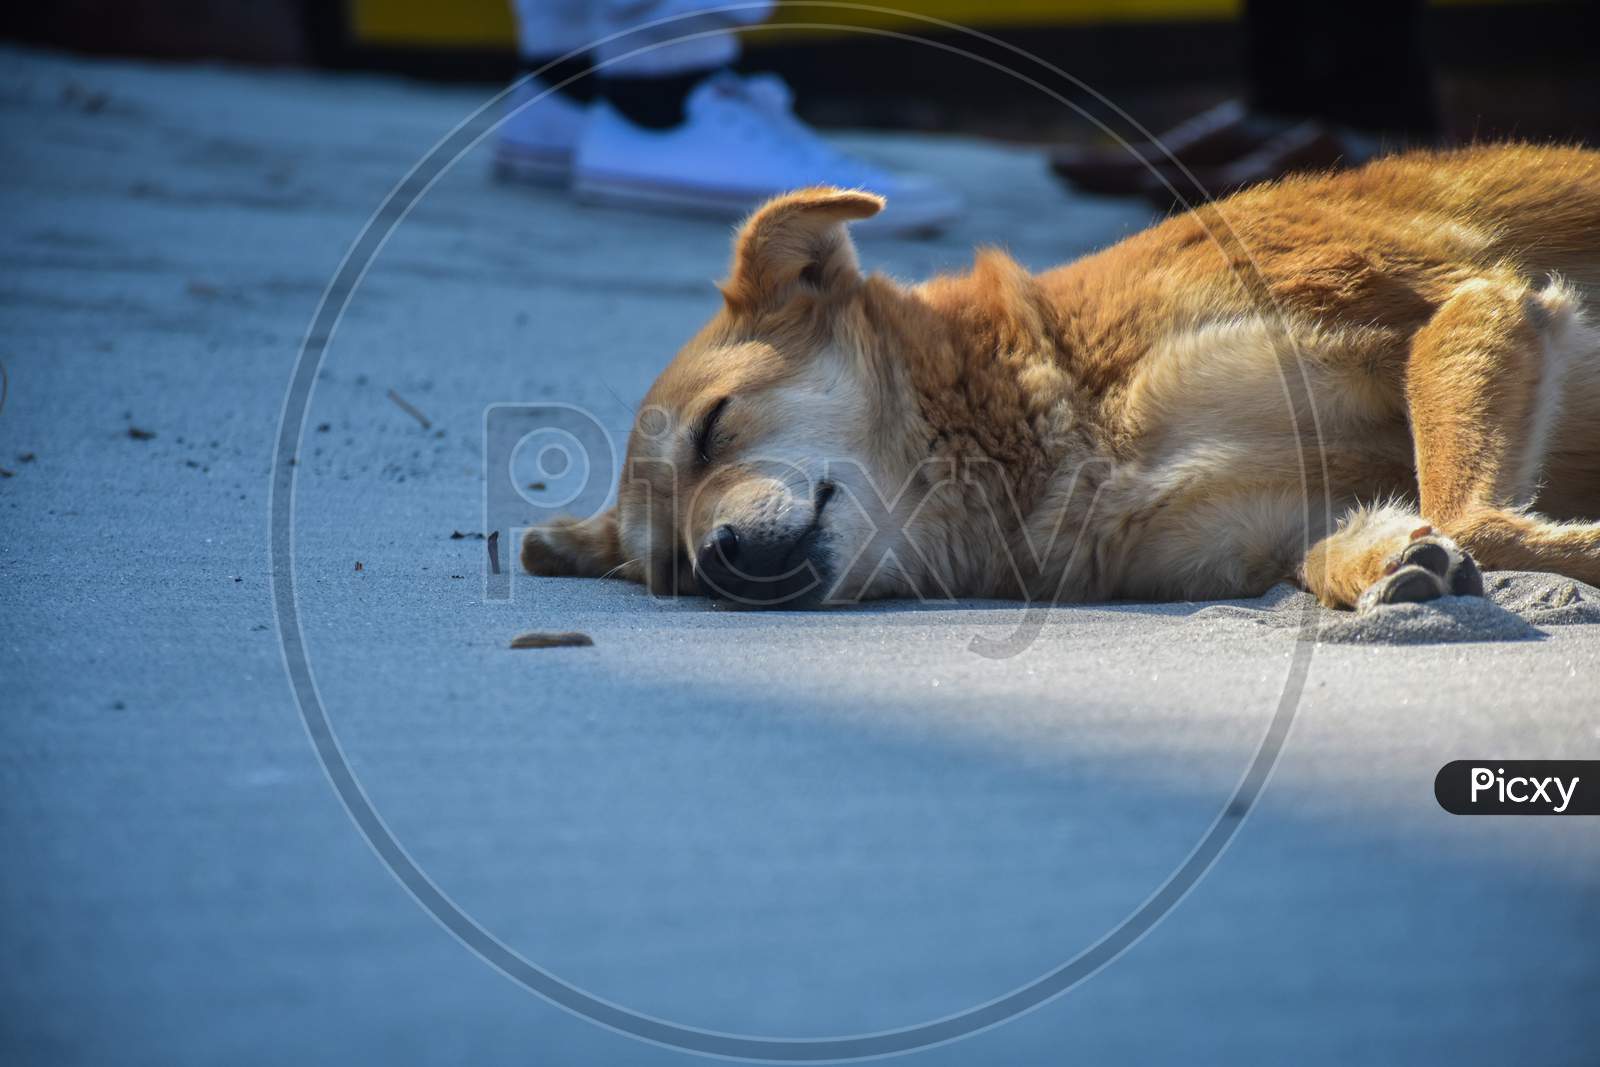 a street dog sleeping on the beach